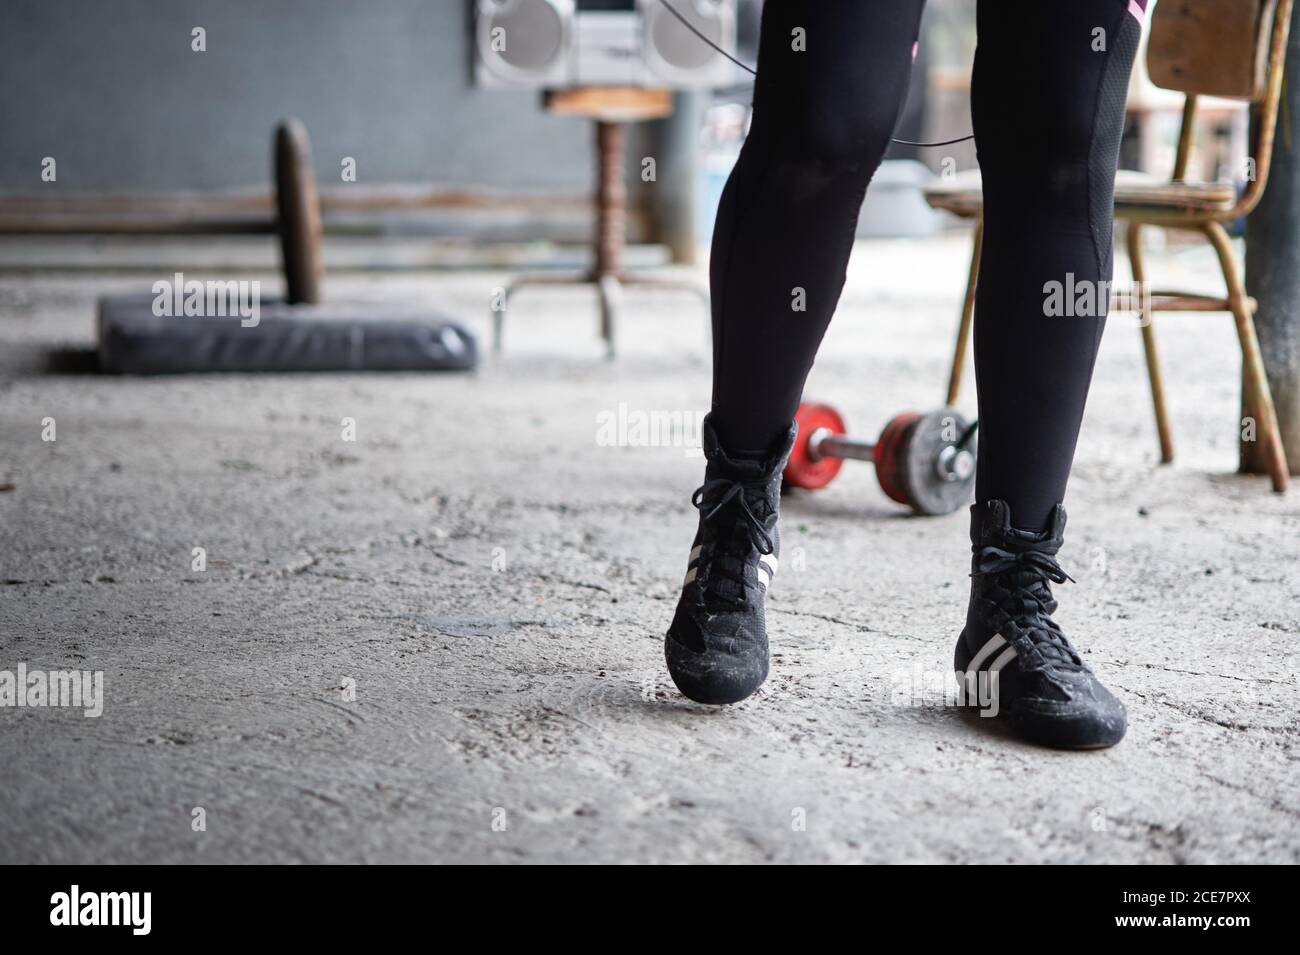 Crop anonymous sportsperson in leggings neri e sneakers che camminano sopra palestra seminterrato con pavimento in cemento vicino a manubri e boombox vecchio stile Foto Stock